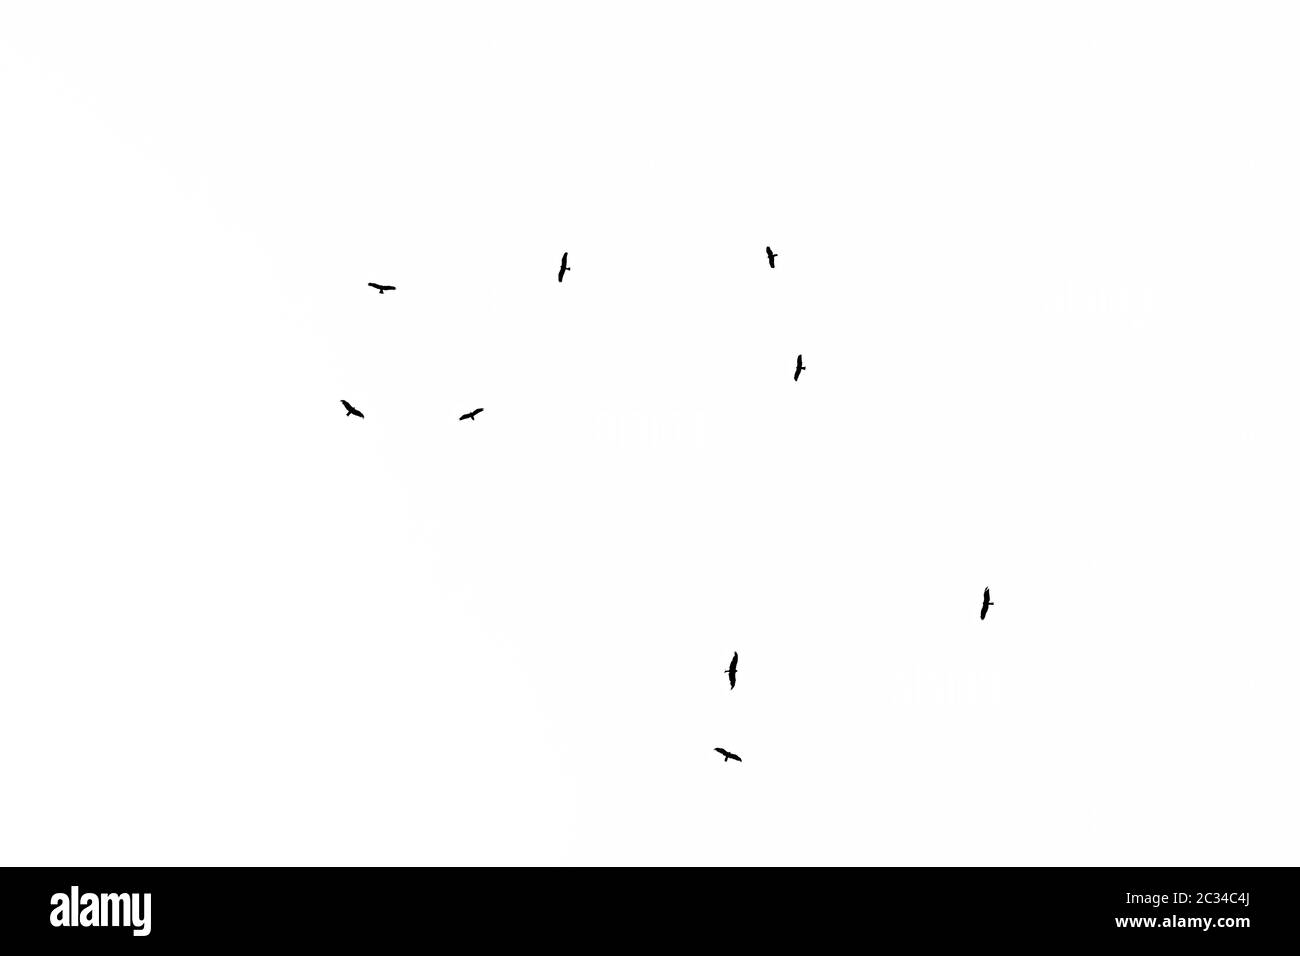 Niedriger Blickwinkel auf eine Herde westlicher Marschen, die in den Himmel fliegen. Schwarz-weiße Silhouette. Stockfoto